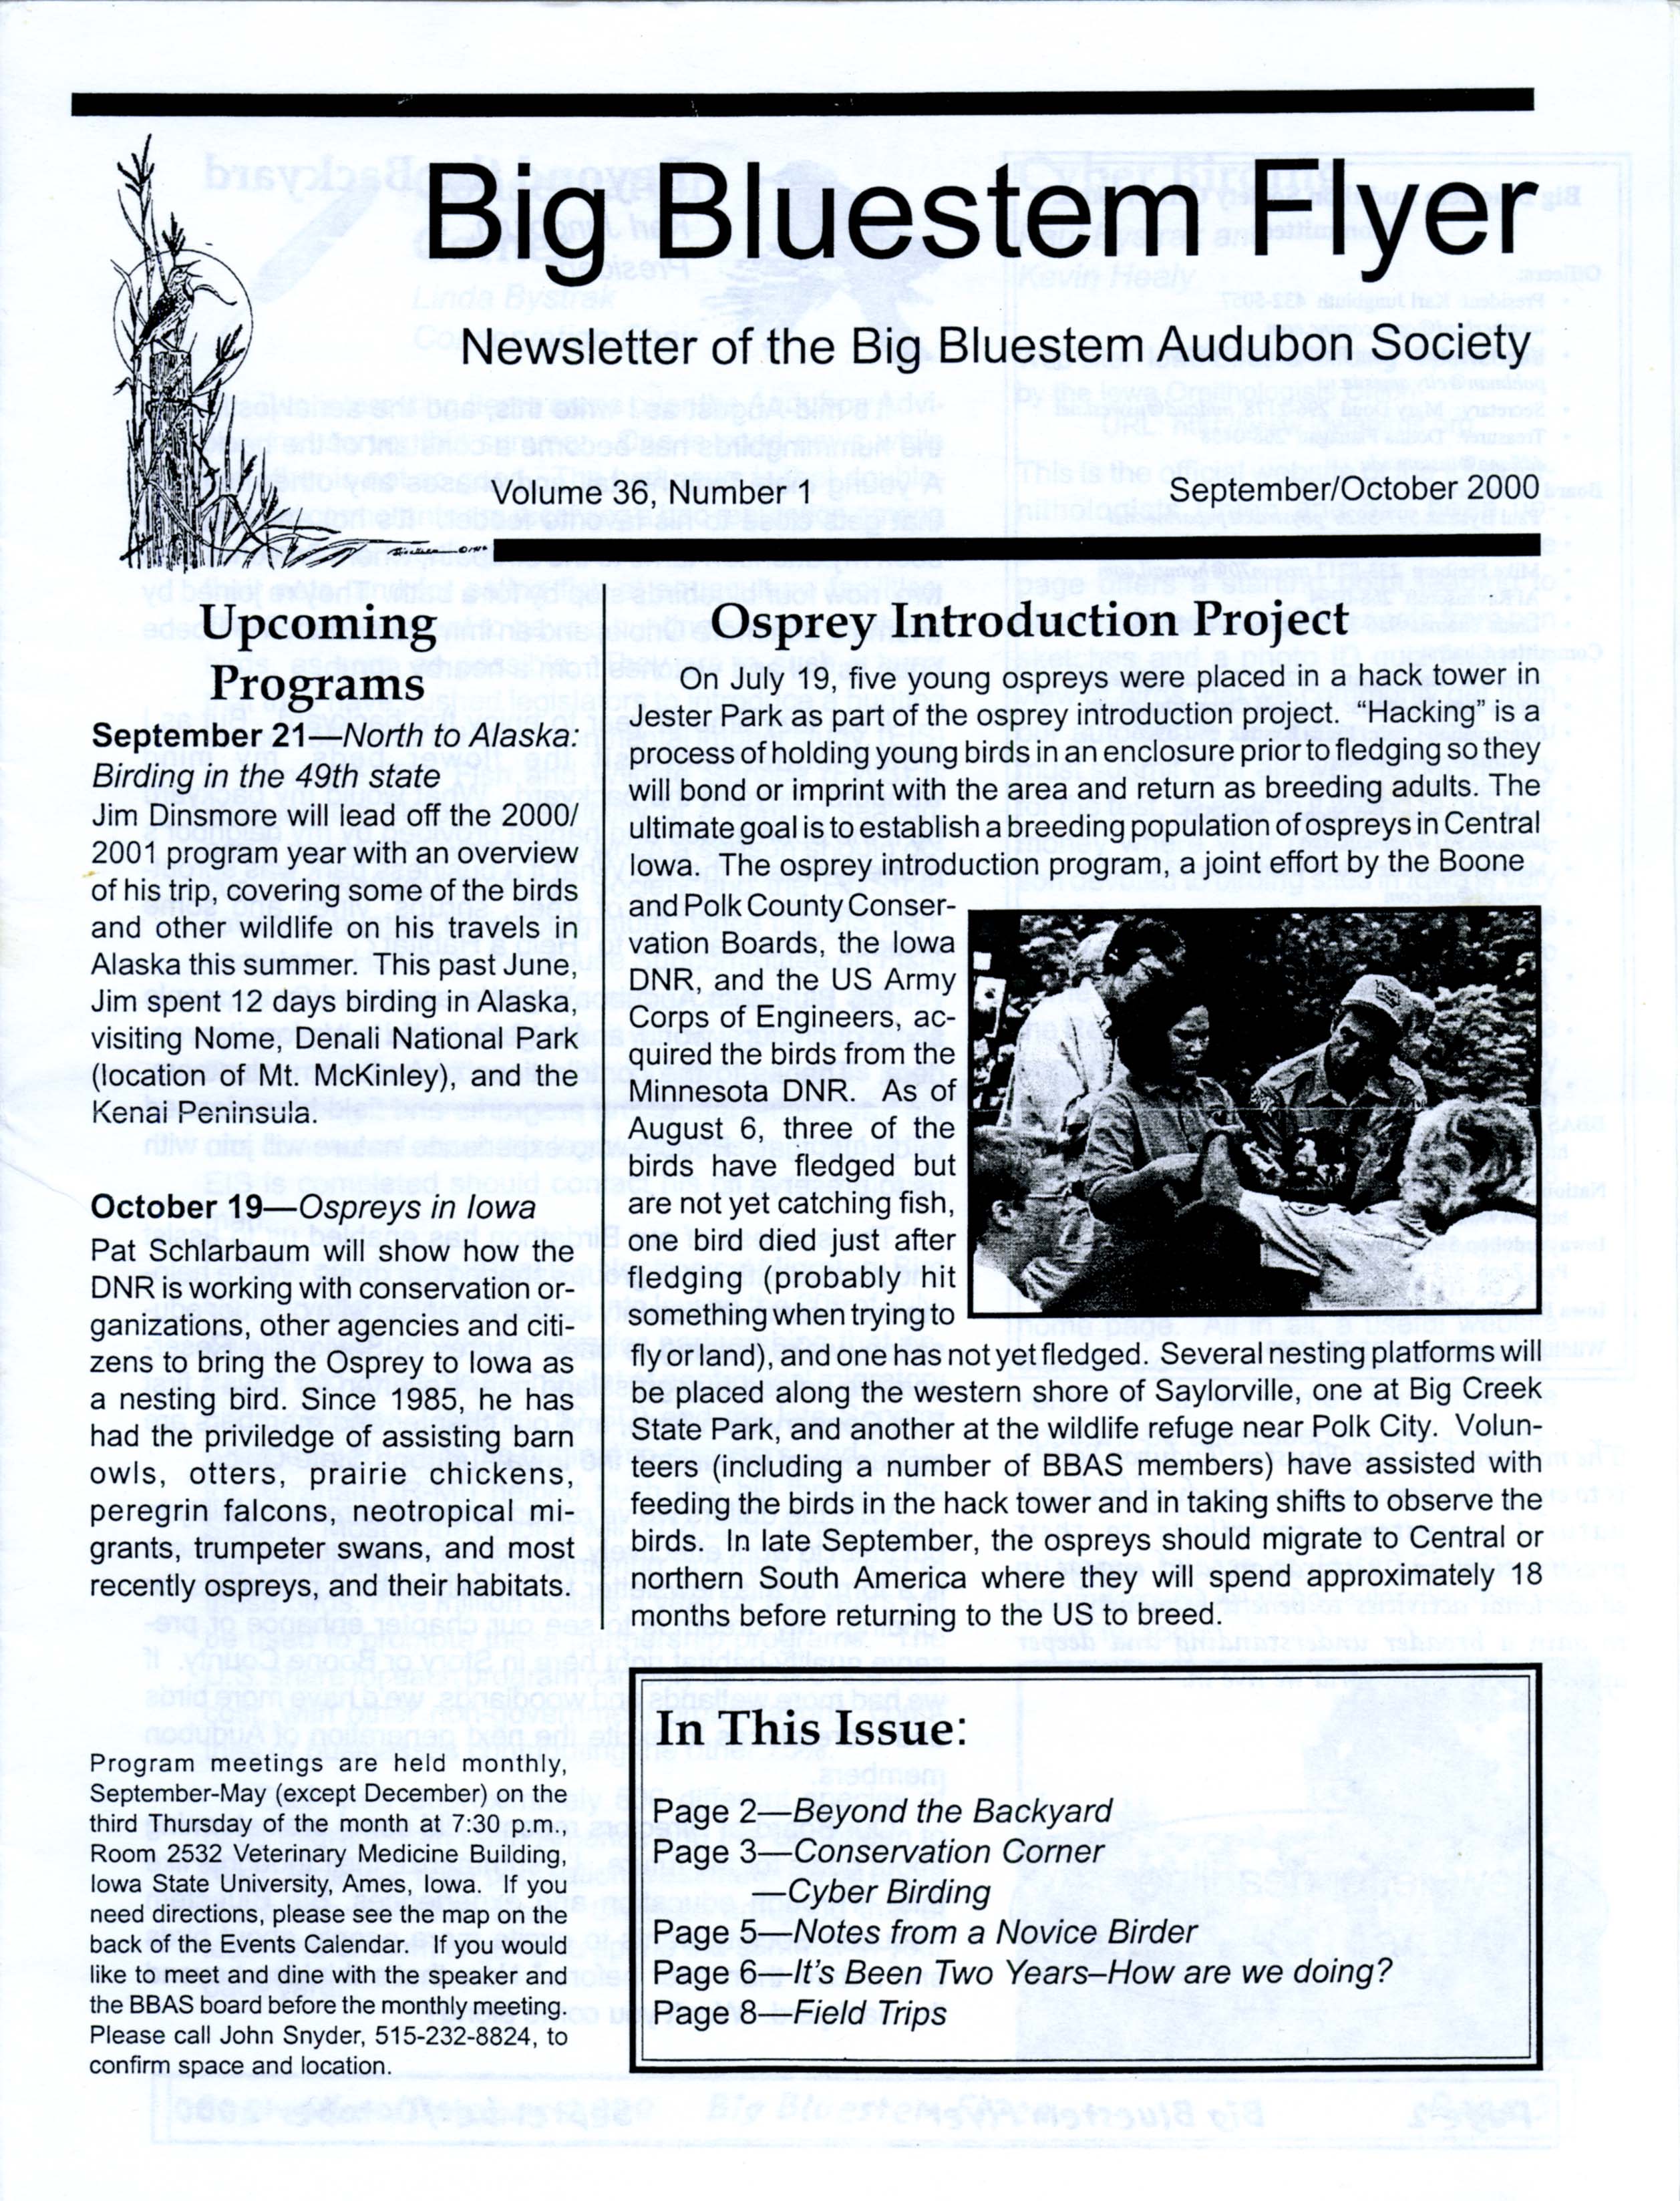 Big Bluestem Flyer, Volume 36, Number 1, September/October 2000